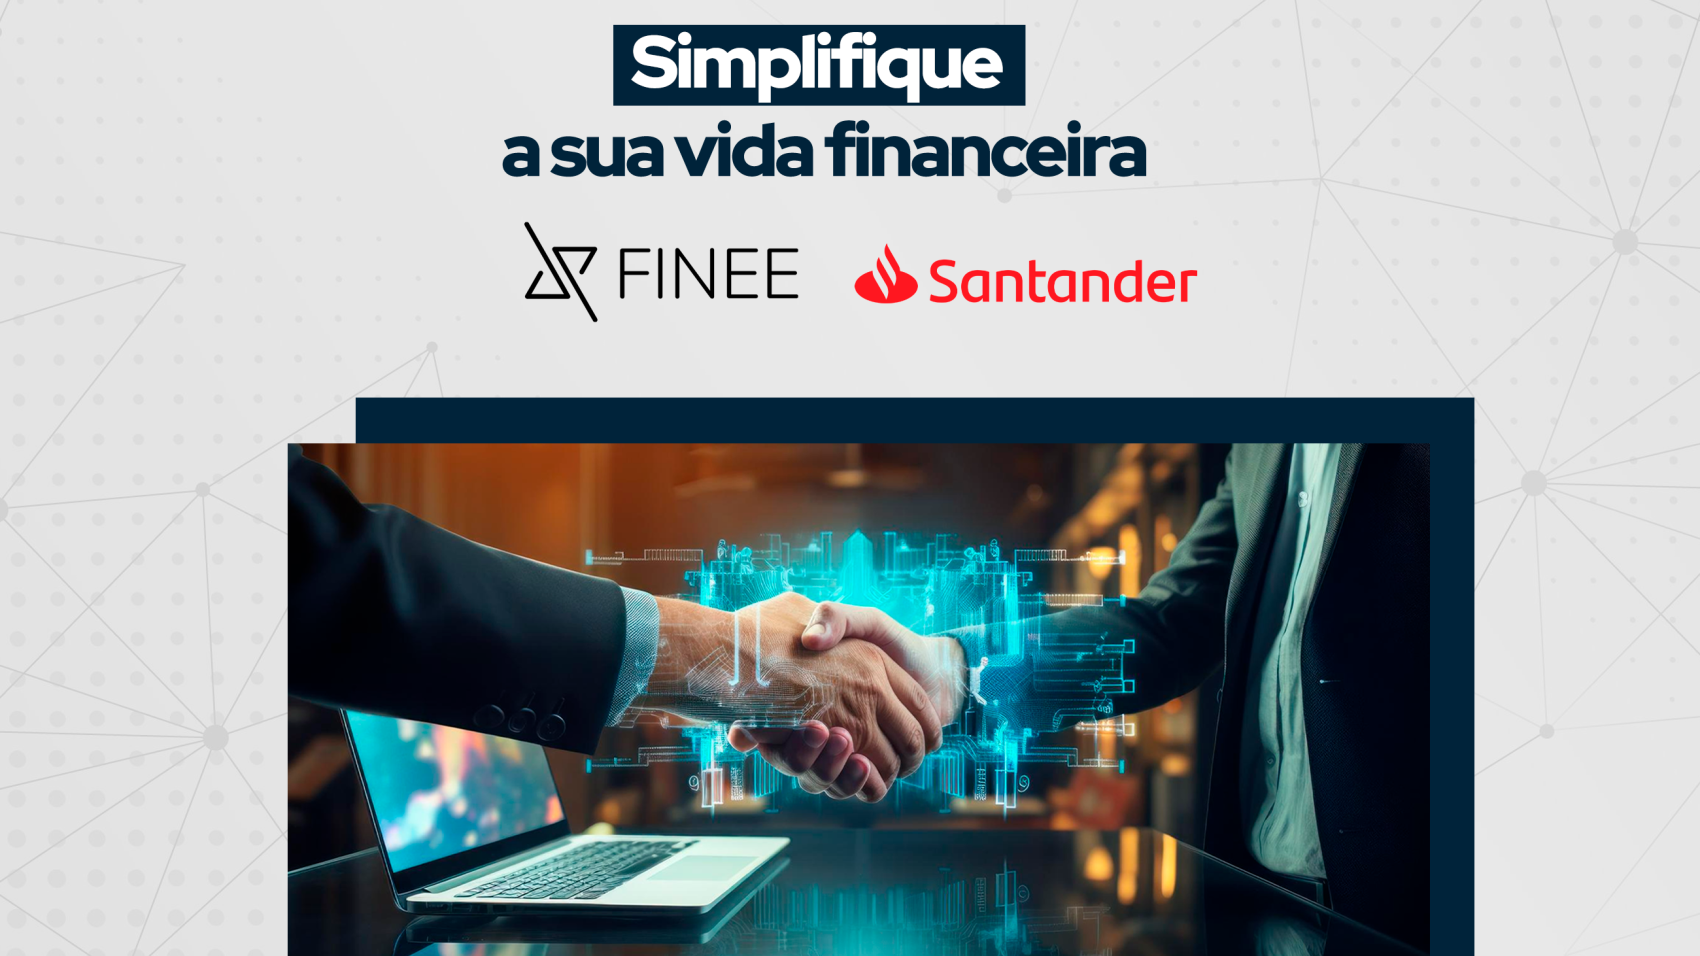 Finee-Santander-BLOG